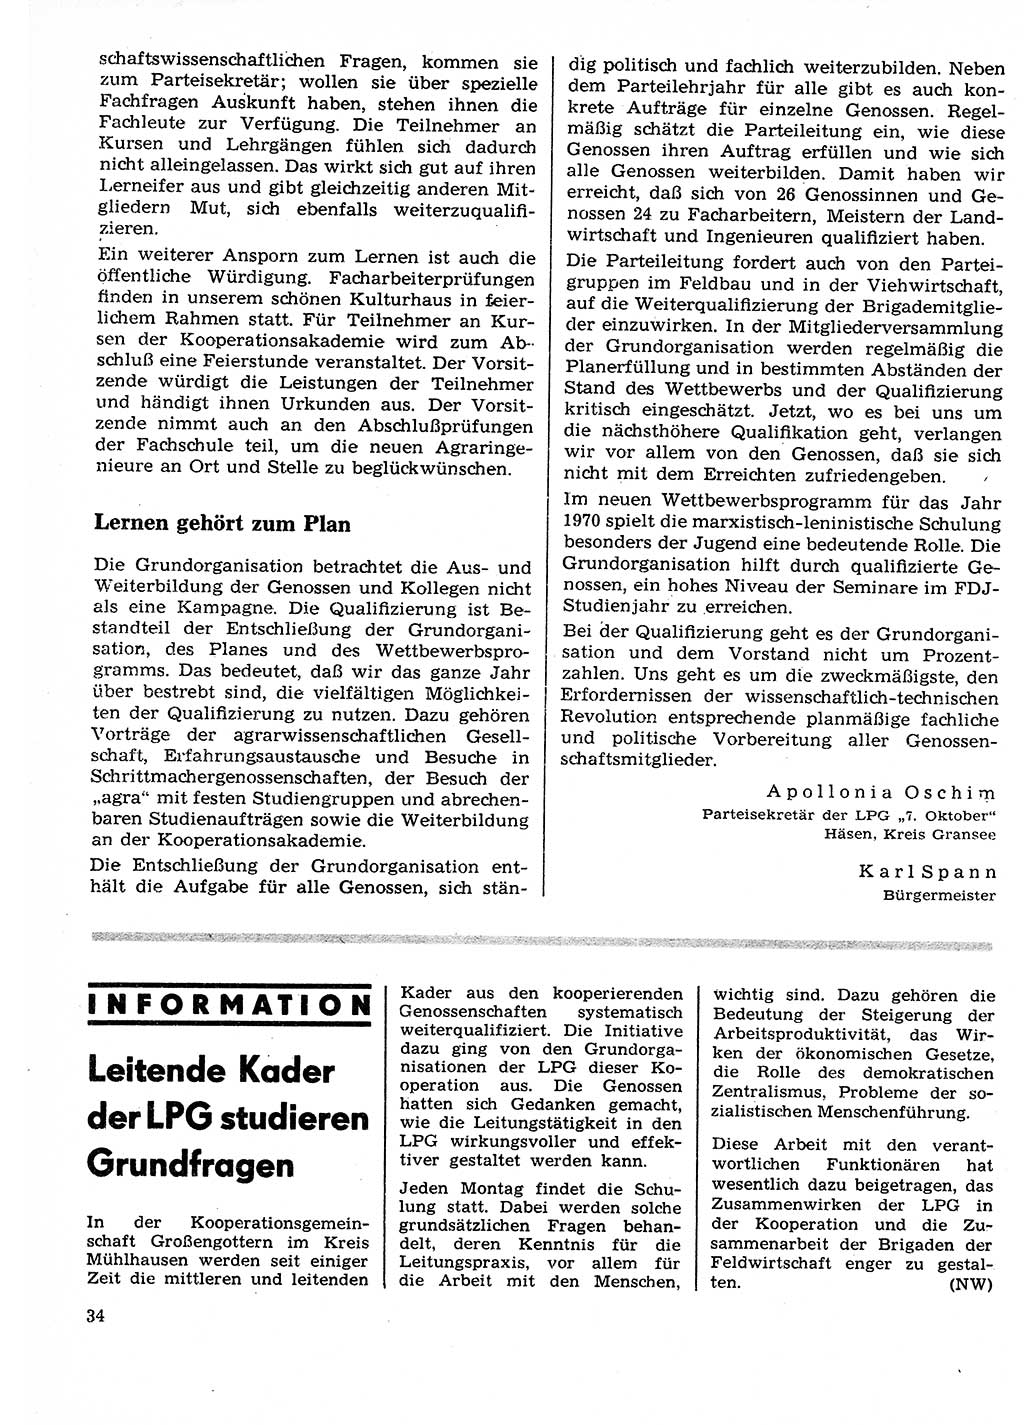 Neuer Weg (NW), Organ des Zentralkomitees (ZK) der SED (Sozialistische Einheitspartei Deutschlands) für Fragen des Parteilebens, 25. Jahrgang [Deutsche Demokratische Republik (DDR)] 1970, Seite 34 (NW ZK SED DDR 1970, S. 34)